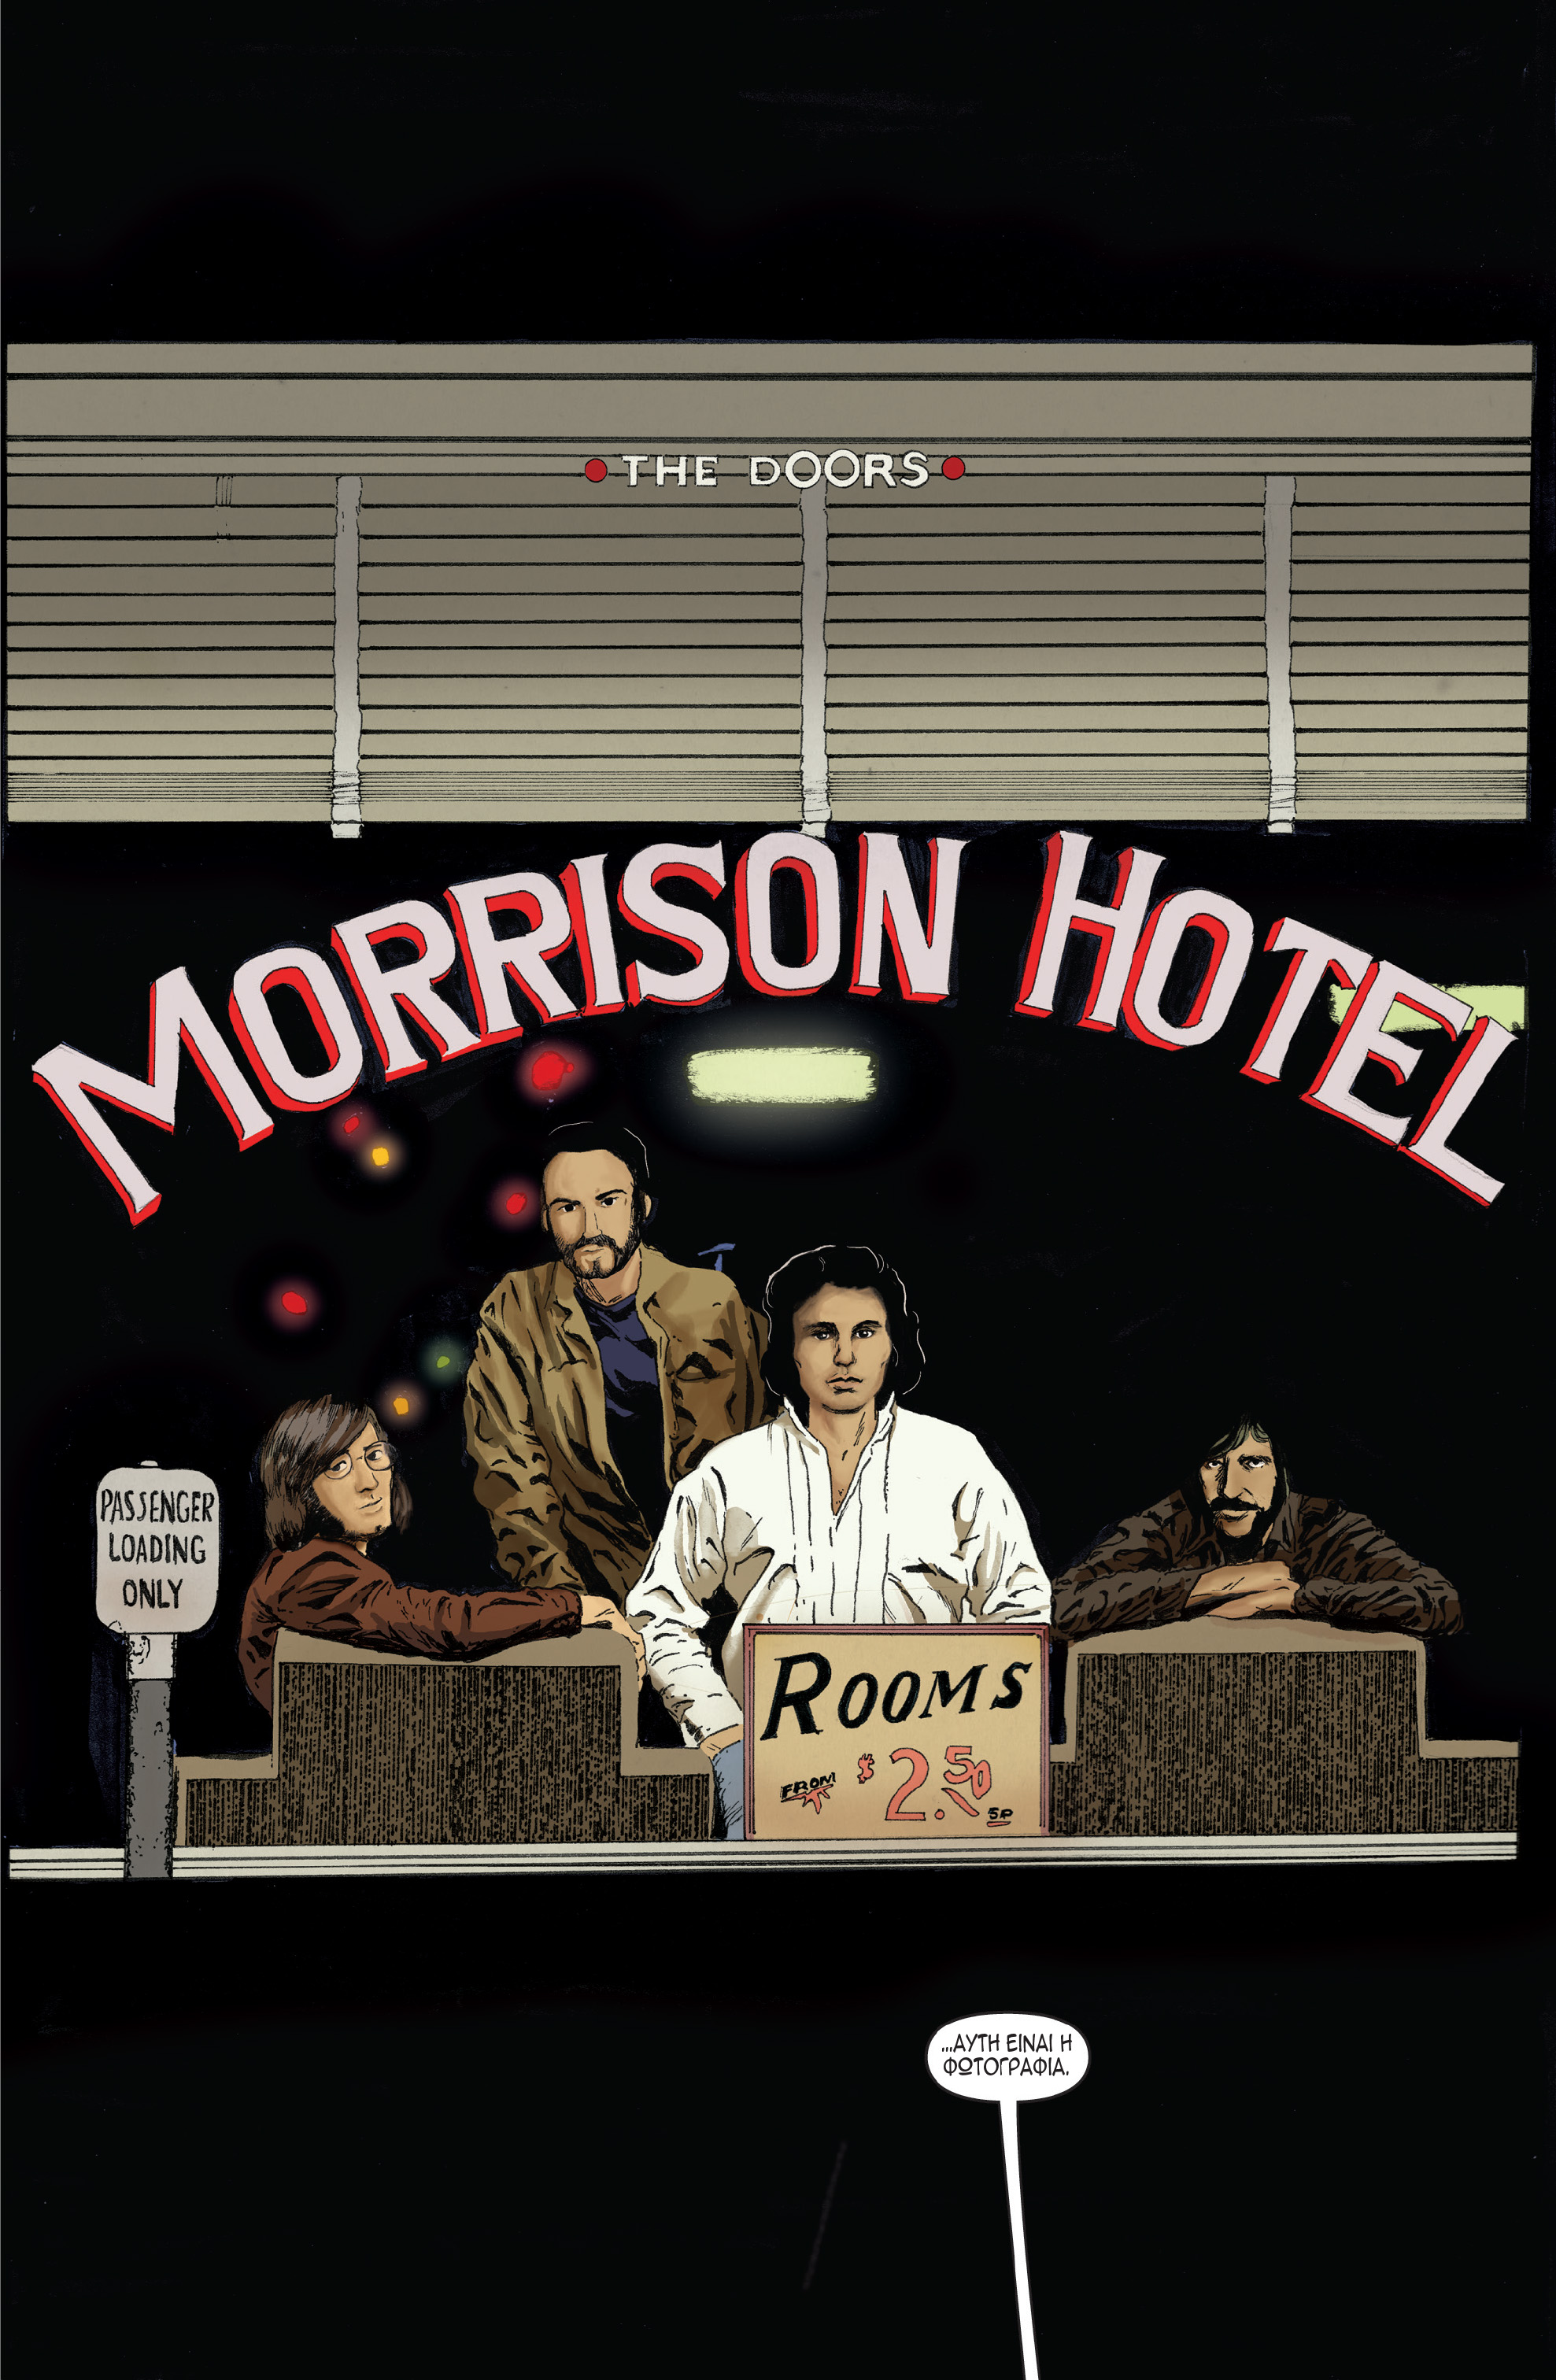 Σκίτσο από τo graphic novel Morisson Hotel για το συγκρότημα Doors